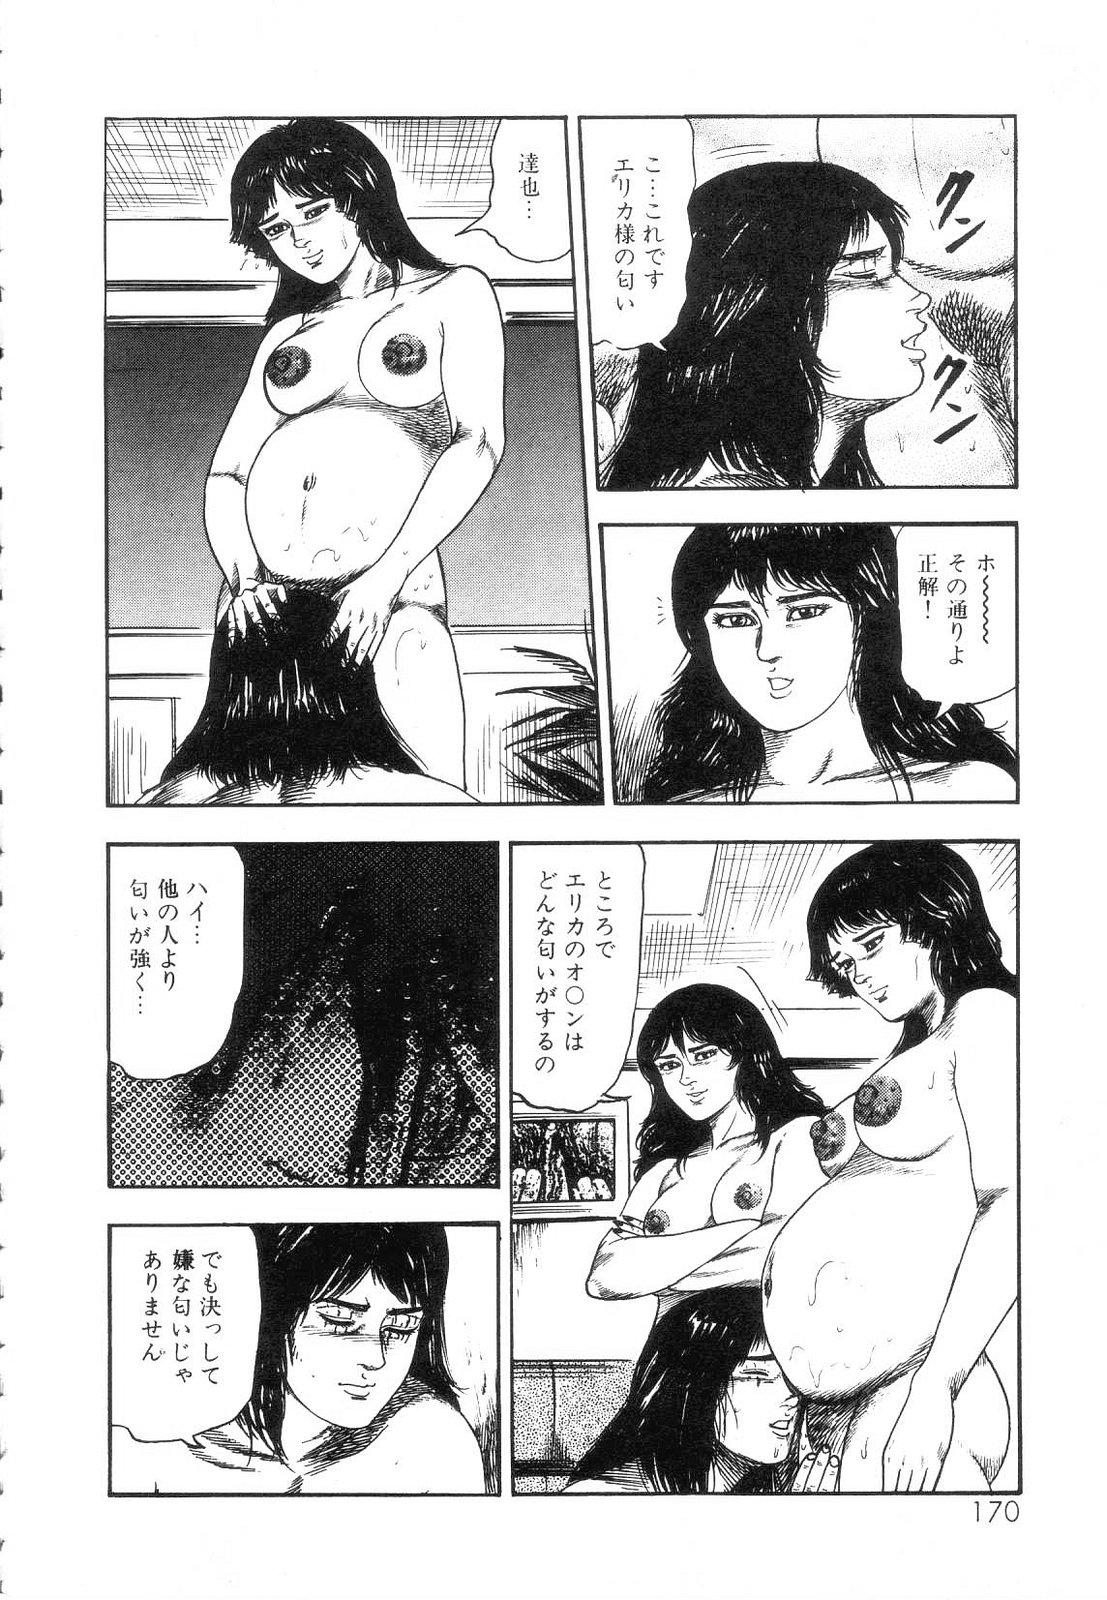 Shiro no Mokushiroku Vol. 5 - Ninshoujo Erika no Shou 171